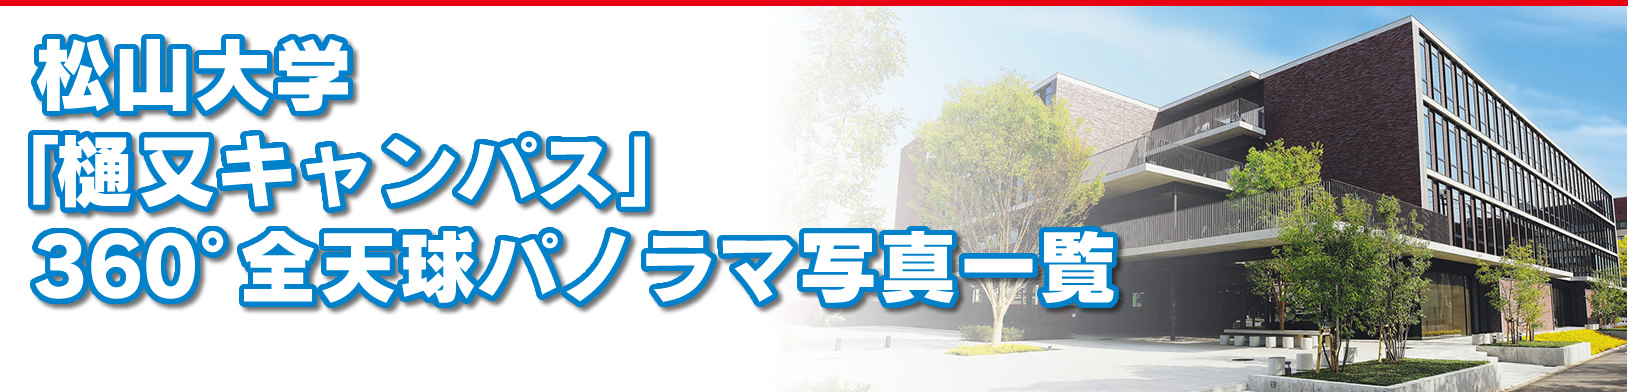 松山大学樋又キャンパス360度全天球パノラマ画像一覧